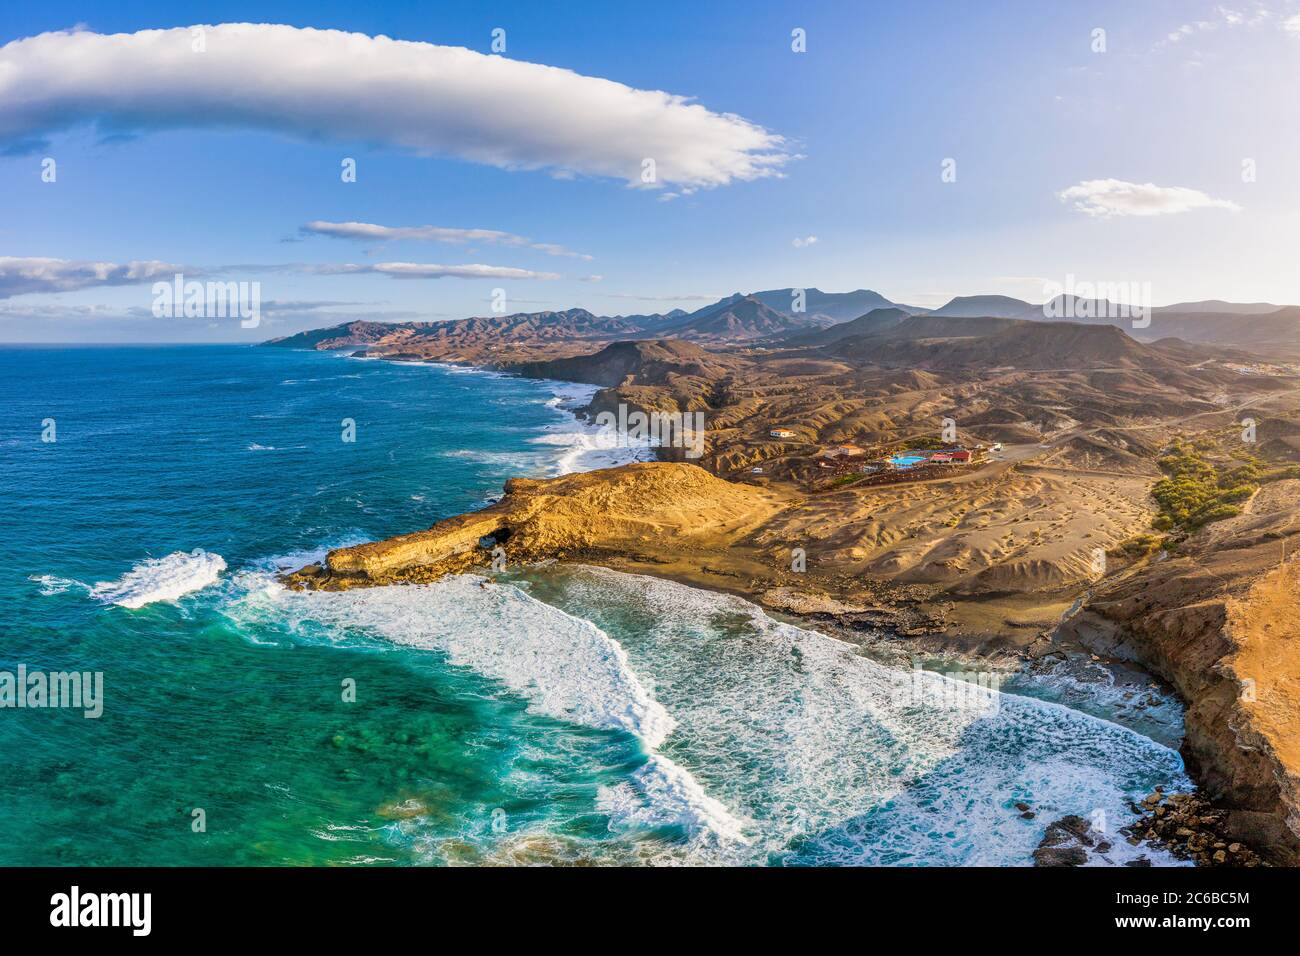 La Pared y Playa Pared, Fuerteventura, Islas Canarias, España, Atlántico, Europa Foto de stock